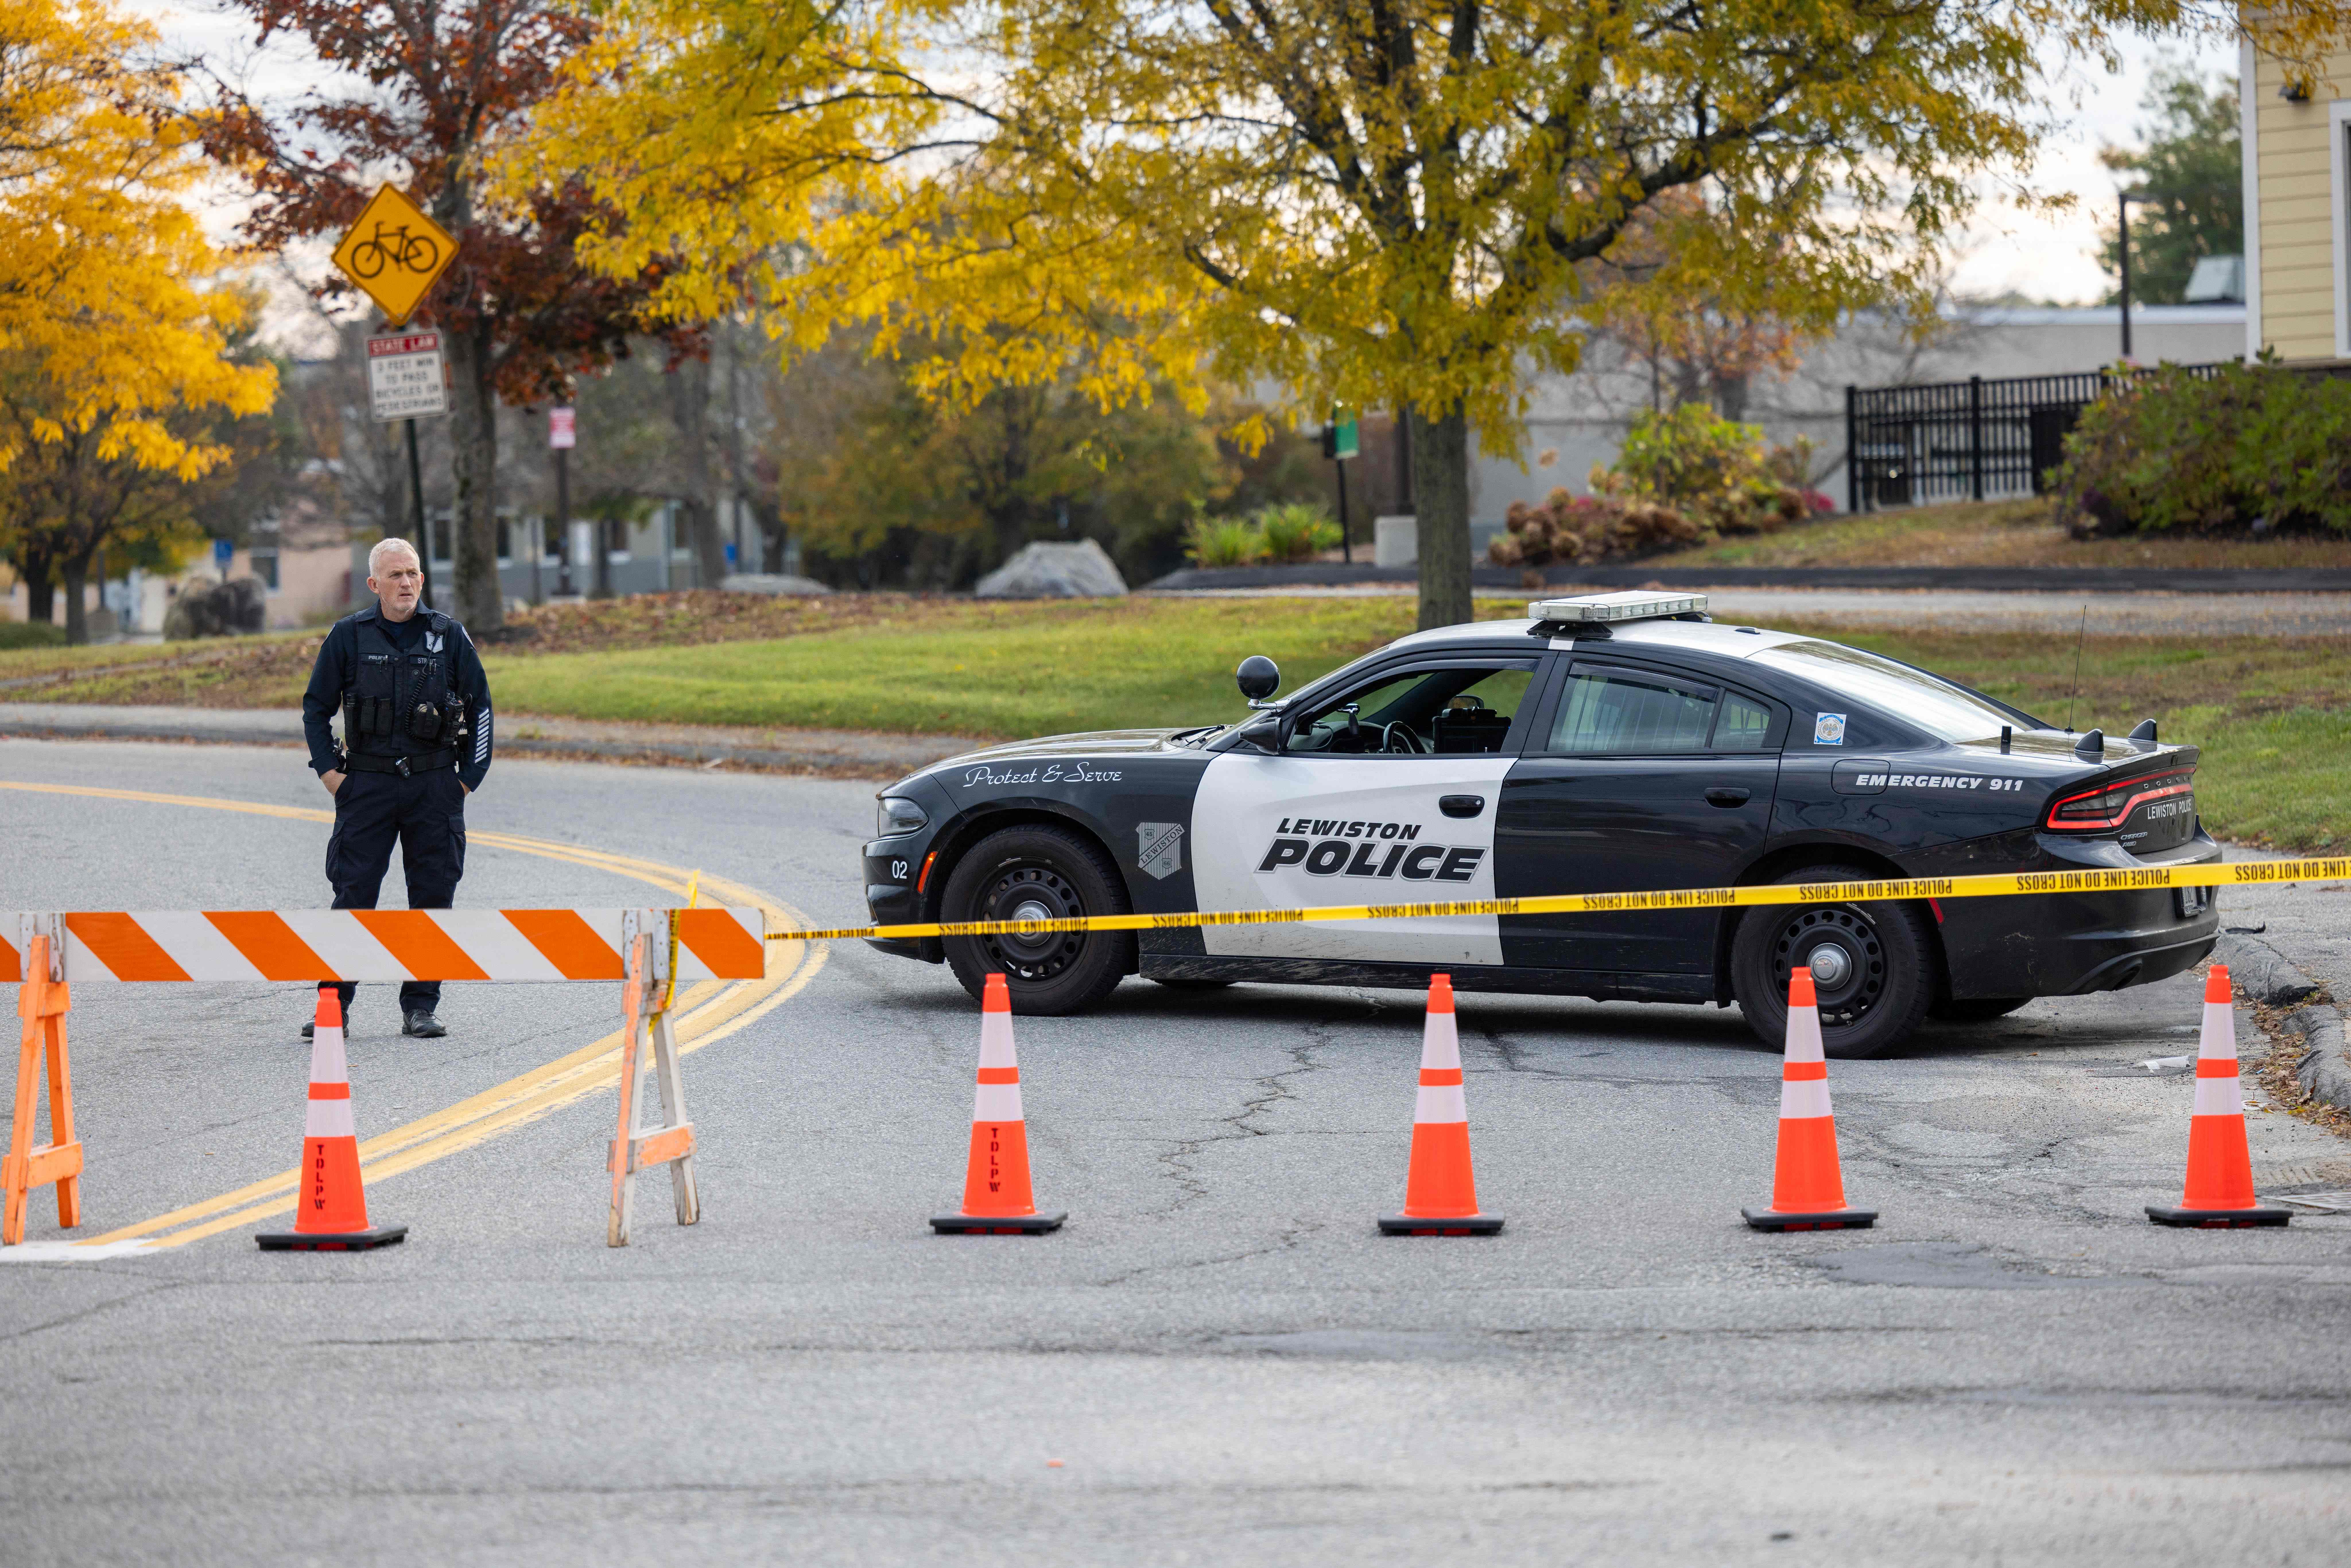 Un oficial de la Policía bloquea el acceso al camino hacia Sparetime Recreation en Lewiston, Maine, en donde se busca a Robert Card, sospechoso de una masacre que dejó 20 muertos en esa localidad. (Foto Prensa Libre: AFP)